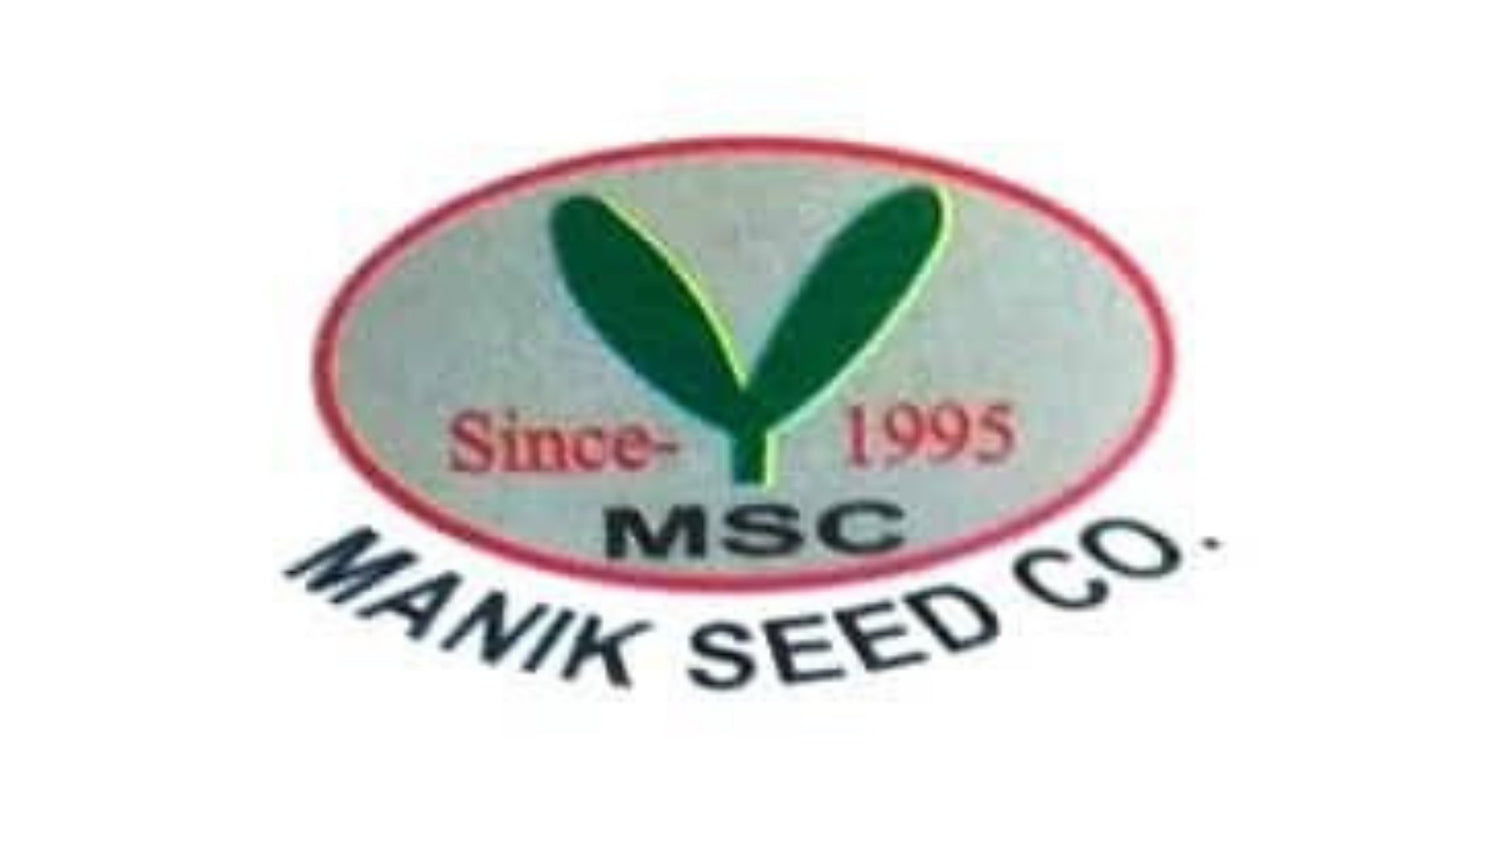  মানিক সীড - হালাল এগ্রো ফার্ম - Manik Seed - Halal Agro Farm